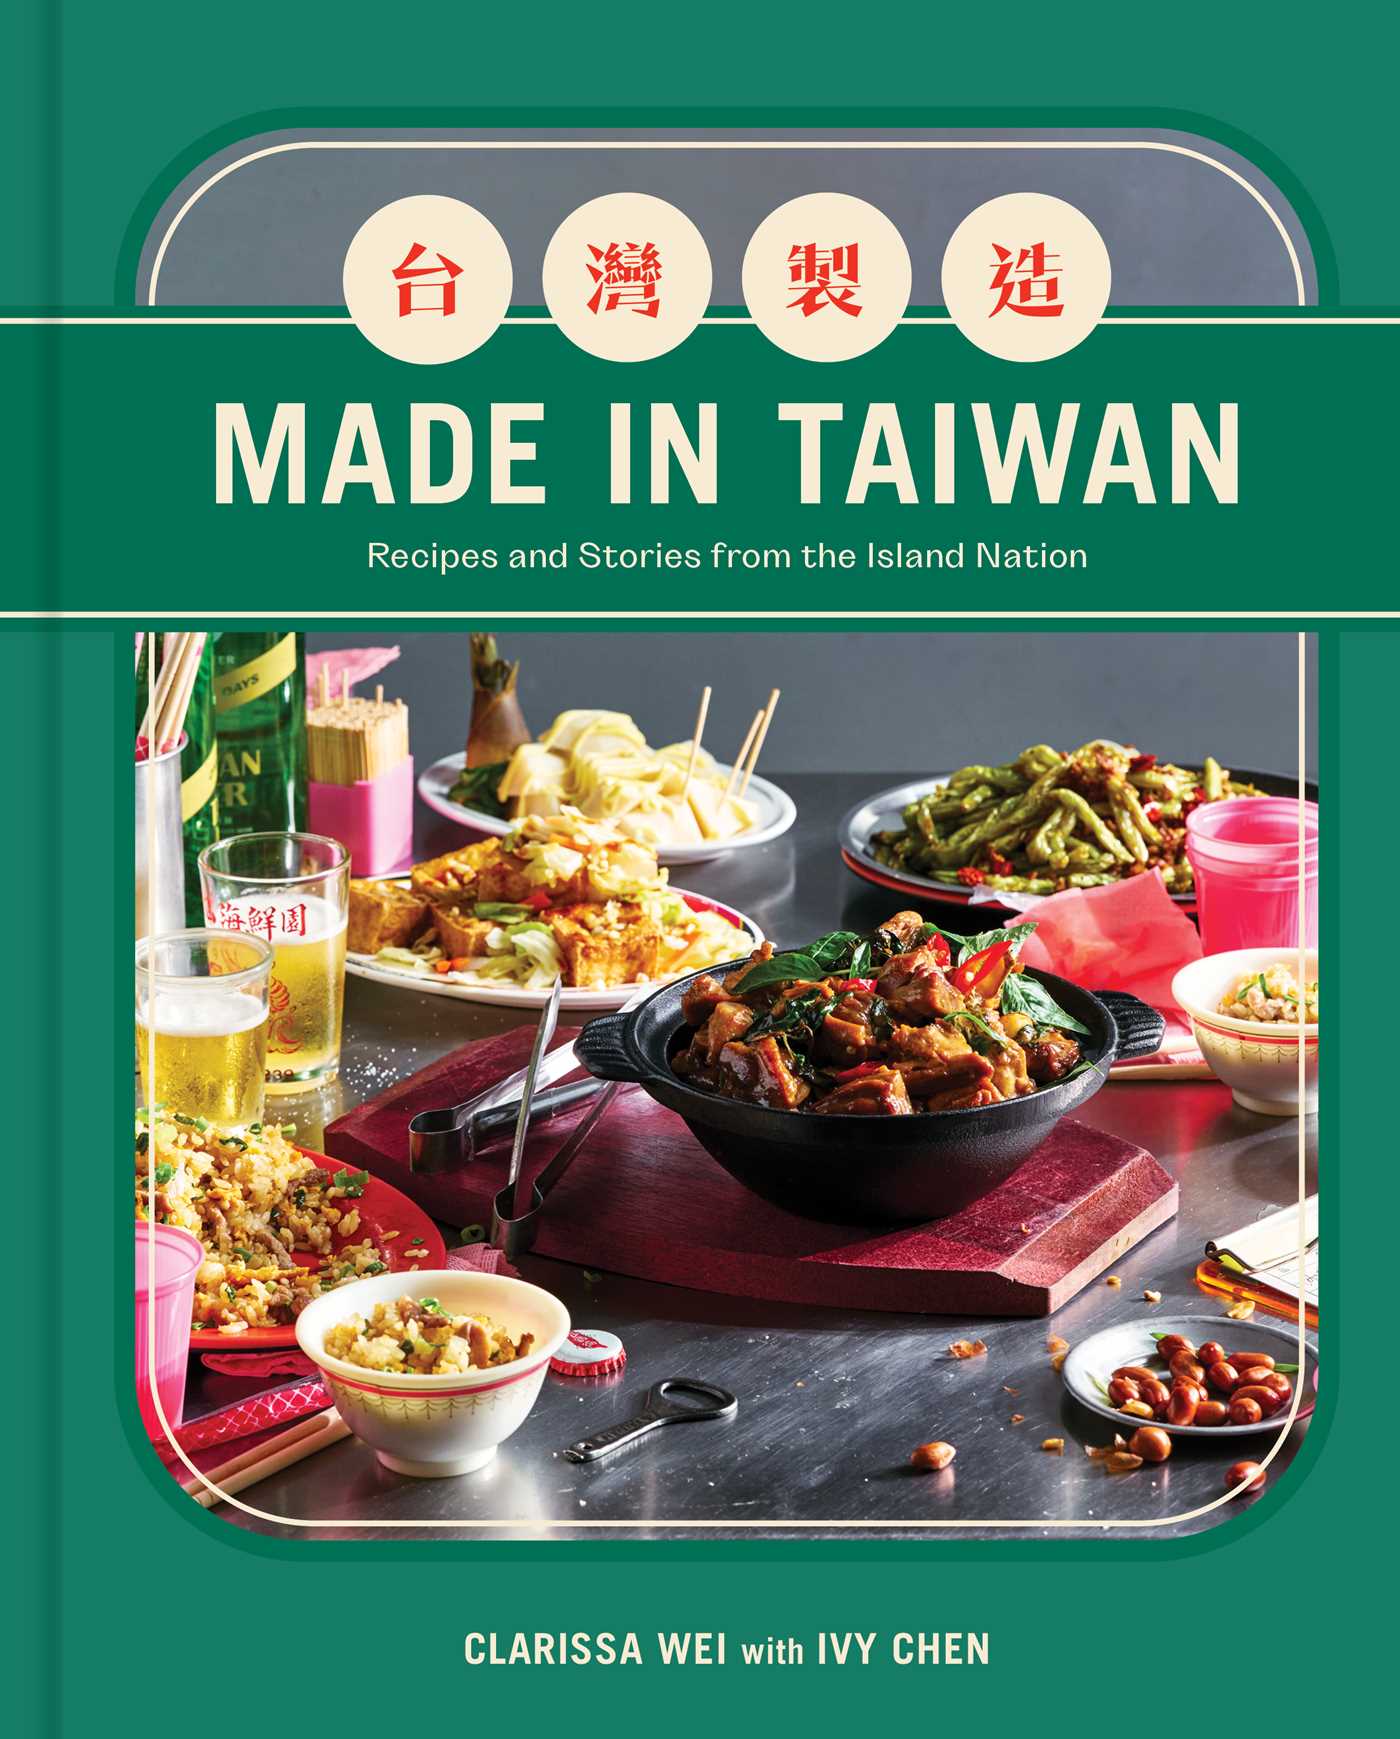 Made in Taiwan Cookbook